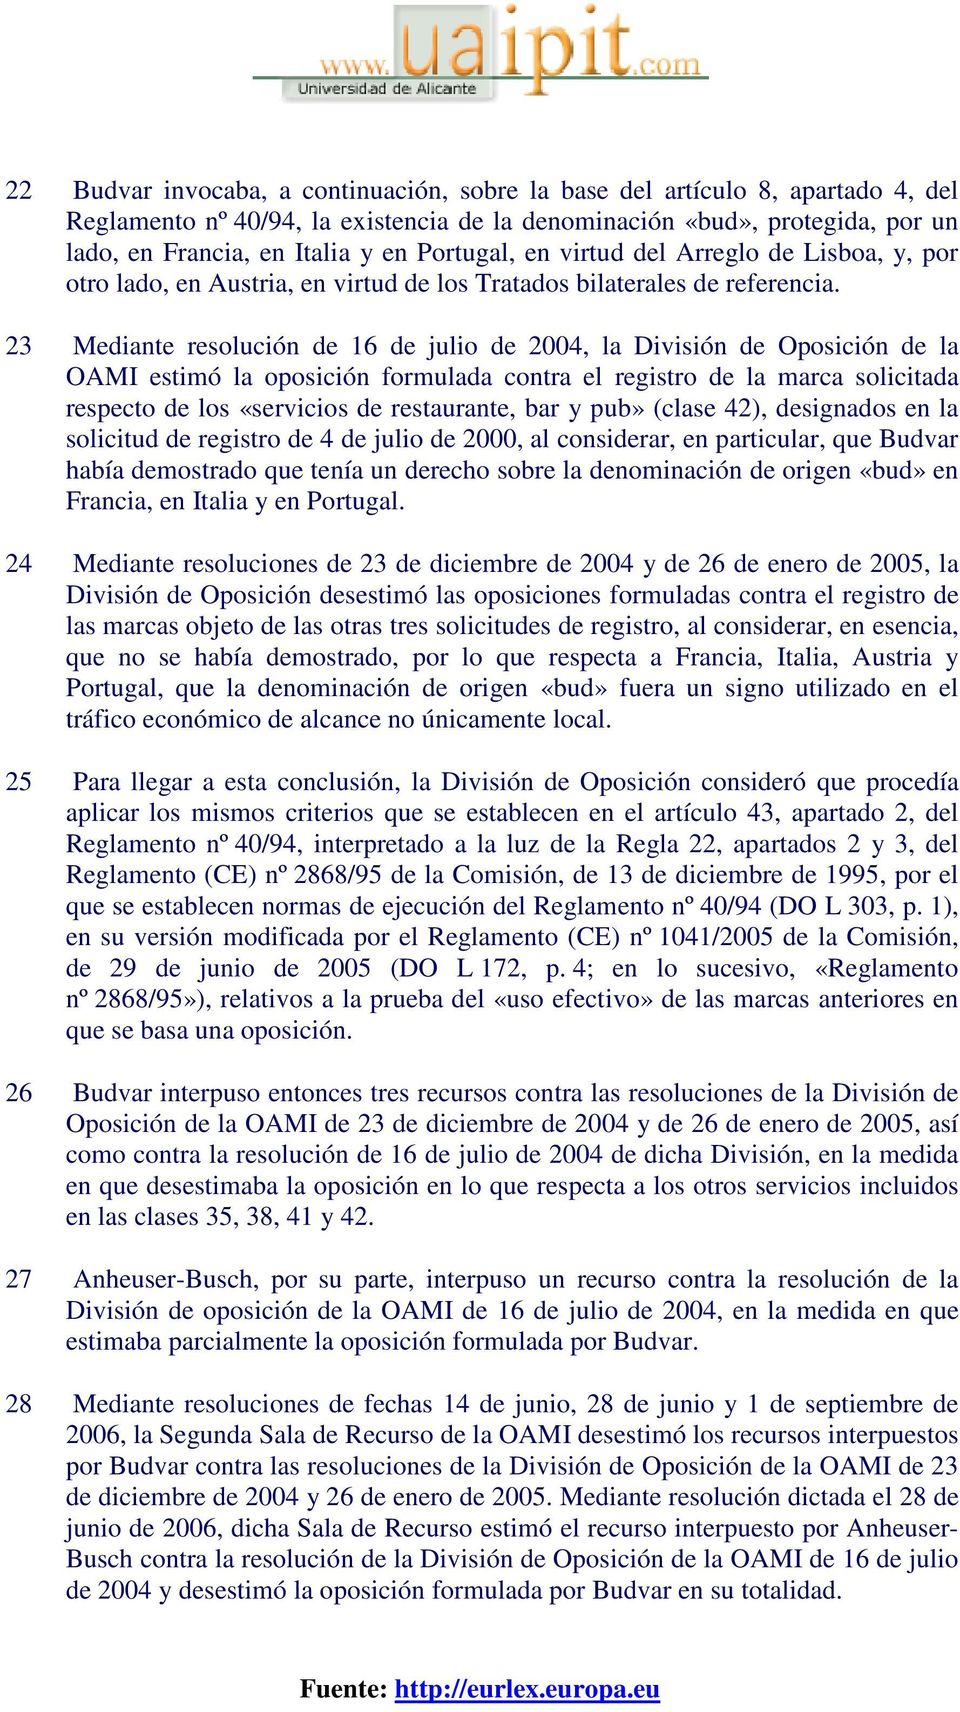 23 Mediante resolución de 16 de julio de 2004, la División de Oposición de la OAMI estimó la oposición formulada contra el registro de la marca solicitada respecto de los «servicios de restaurante,